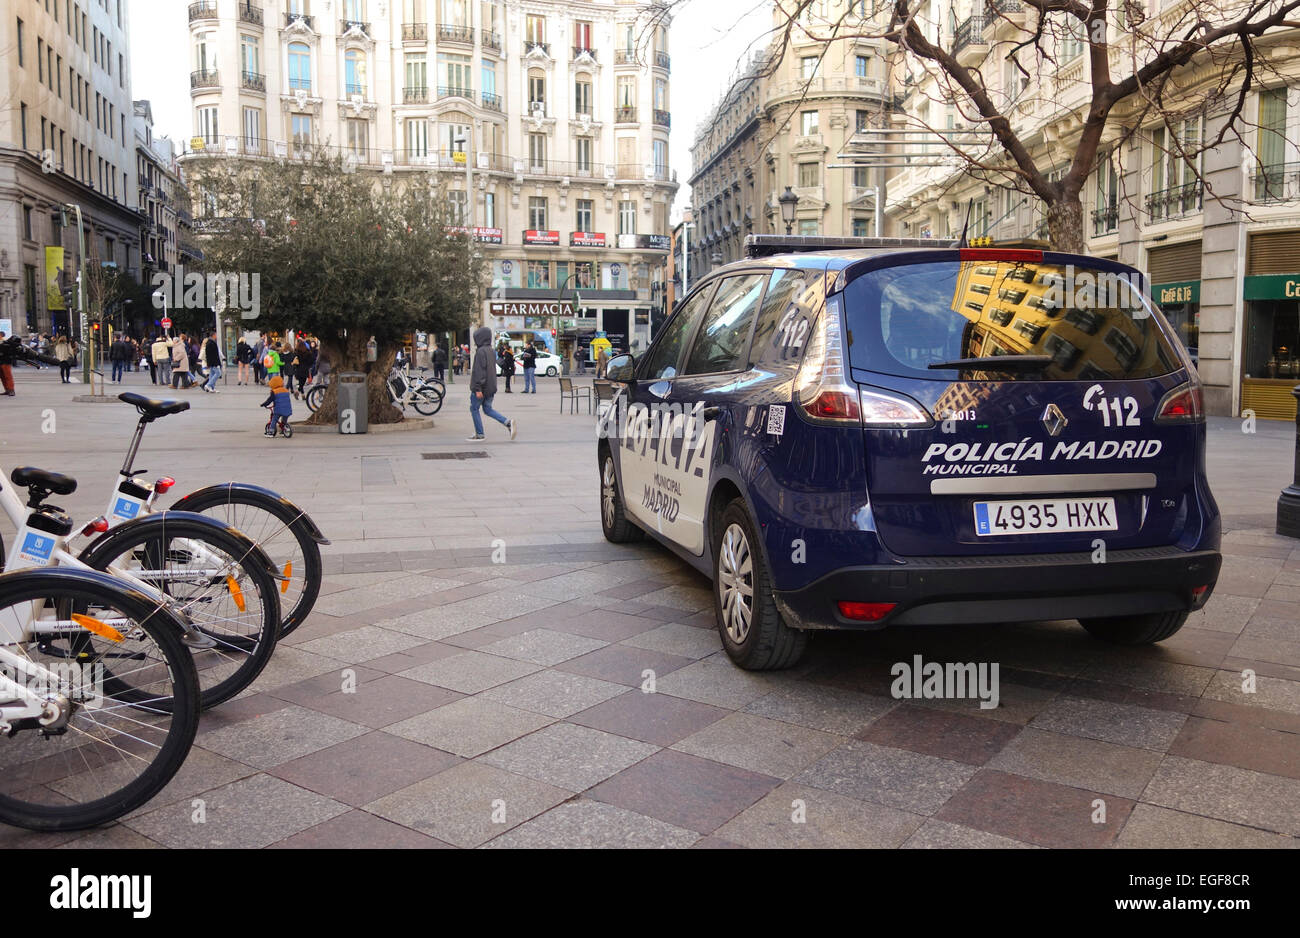 La Police municipale de Madrid voiture à la rue de la montera, en zone piétonne, Madrid, Espagne. Banque D'Images